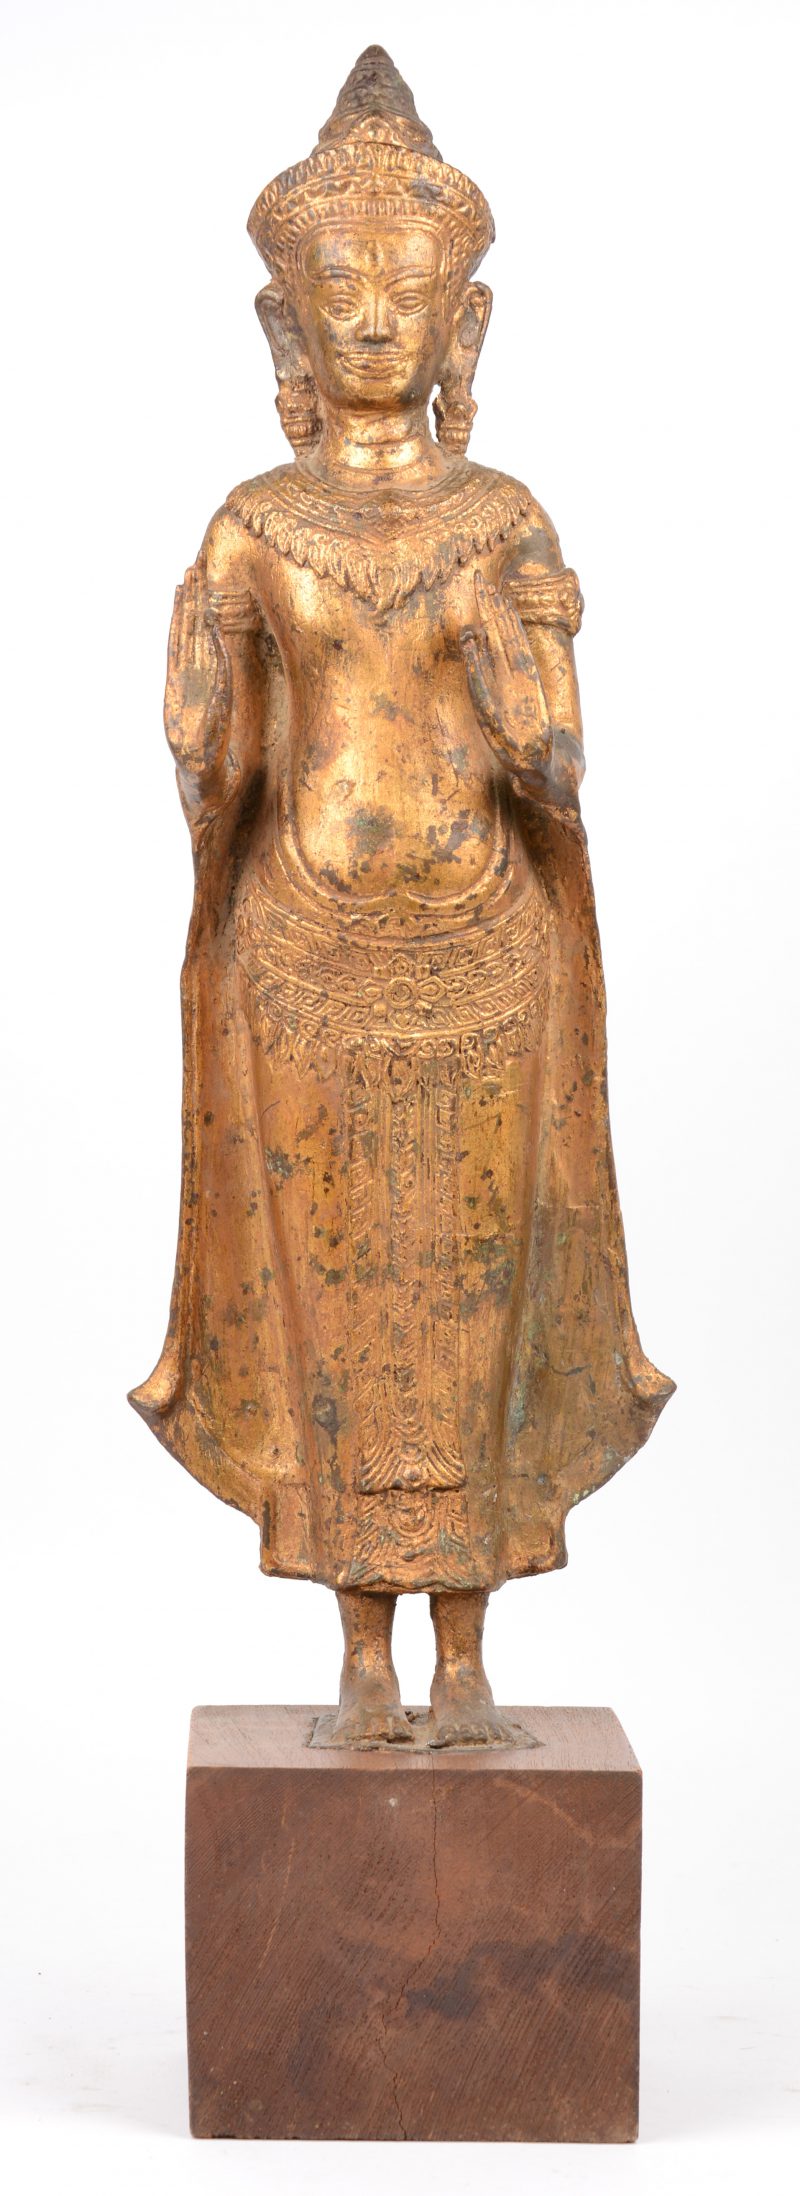 Een staande verguld bronzen Boeddha op houten voetstuk.